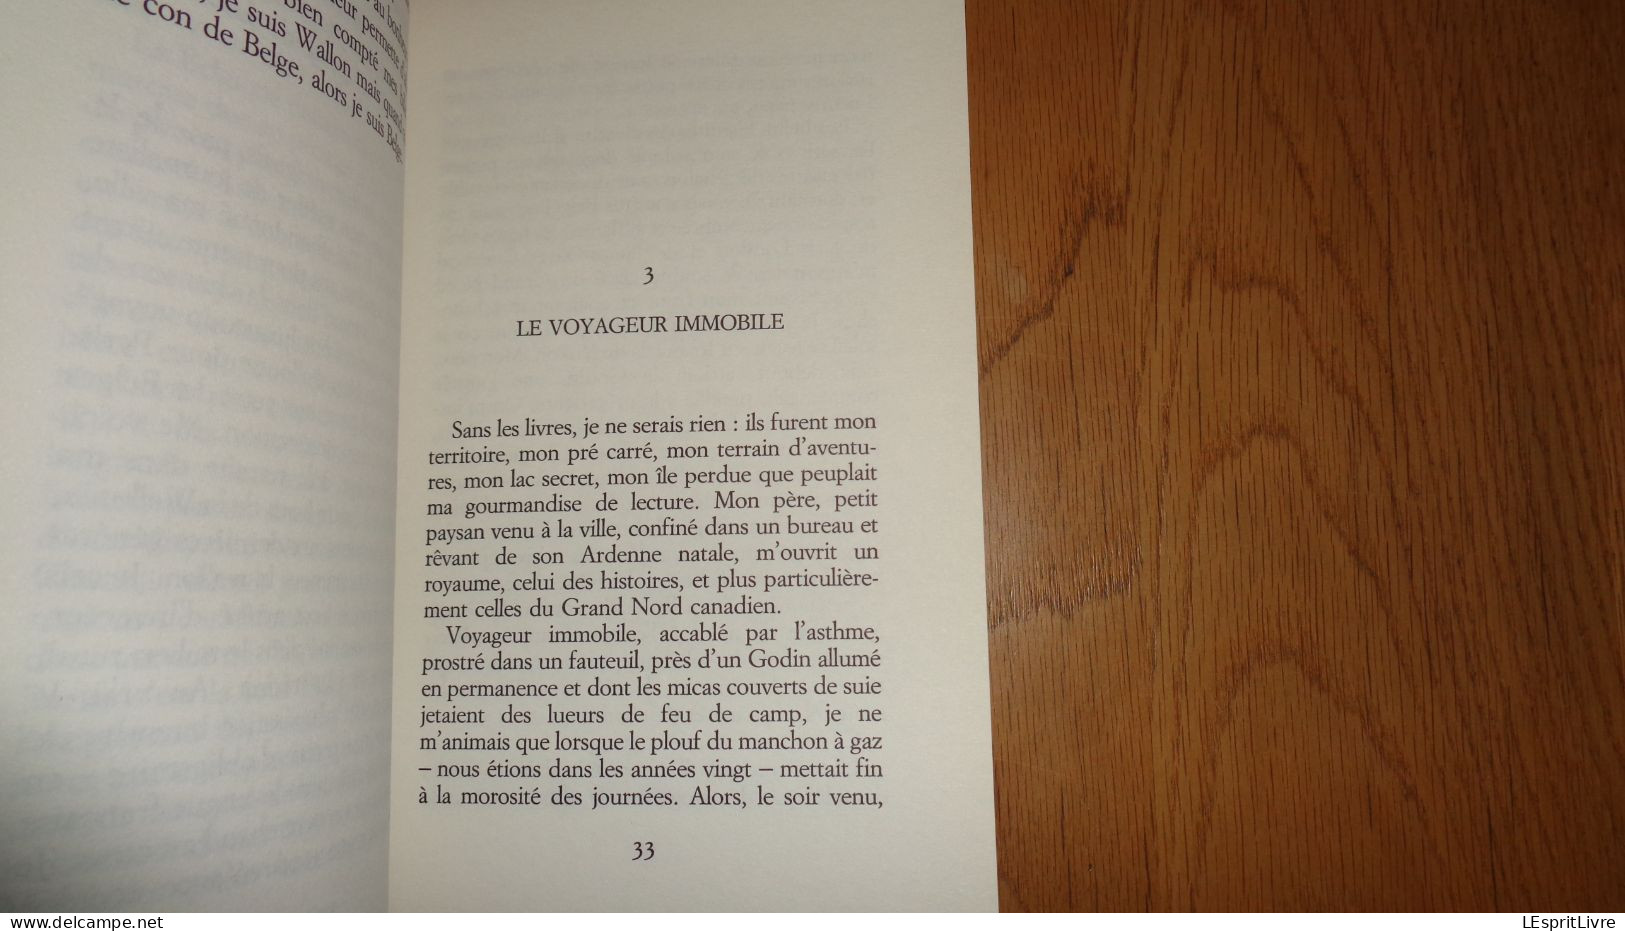 AU BONHEUR DES BELGES René Henoumont Ecrivain Belgique Auteur Belge Histoire Récit Exode France 1940 Guerre 40 45 - Auteurs Belges